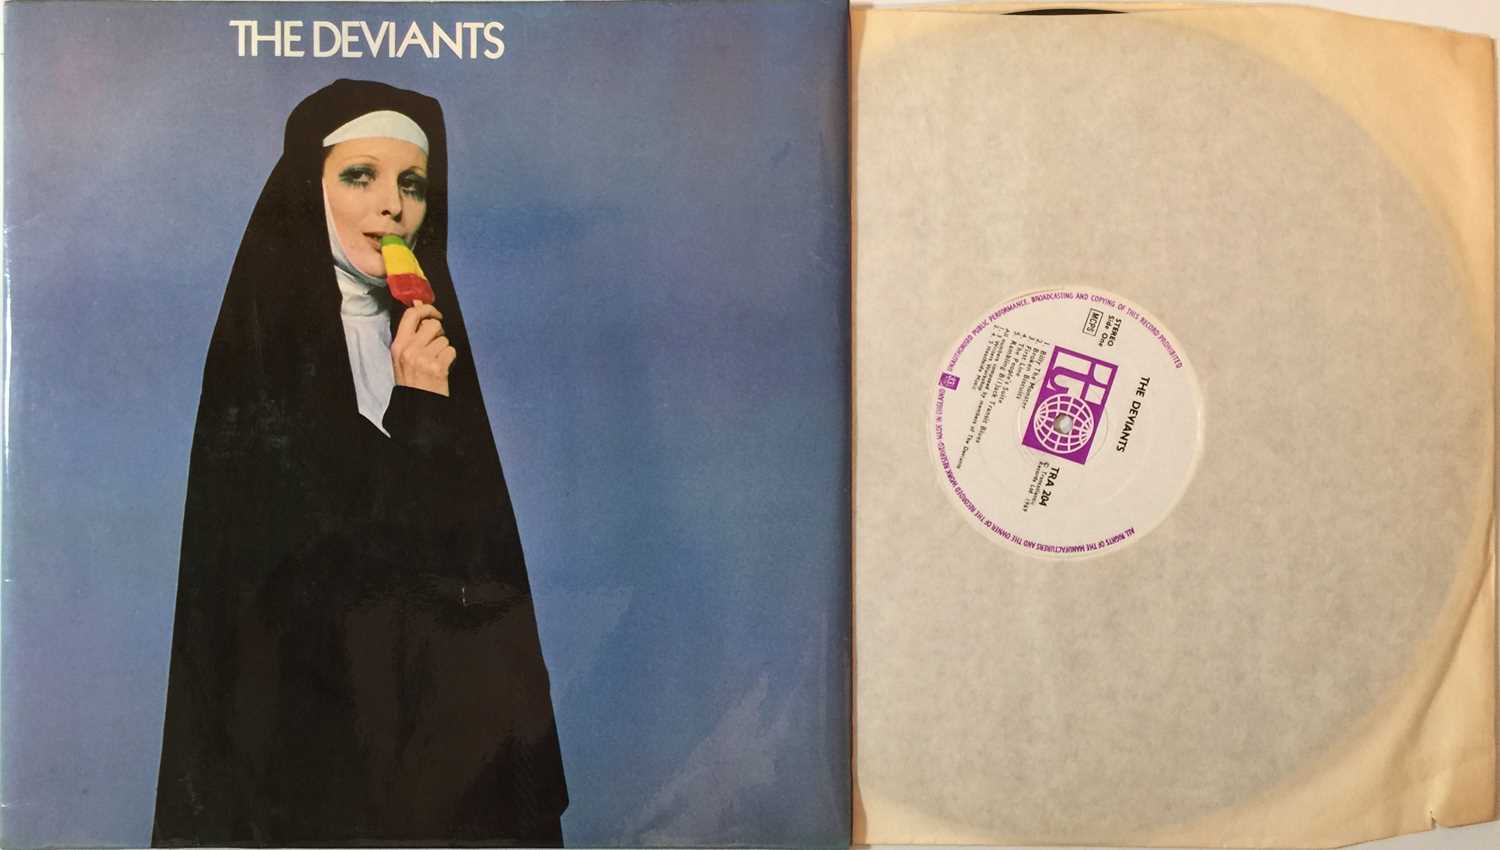 Lot 14 - THE DEVIANTS - THE DEVIANTS LP (ORIGINAL UK COPY - TRANSATLANTIC TRA 204)